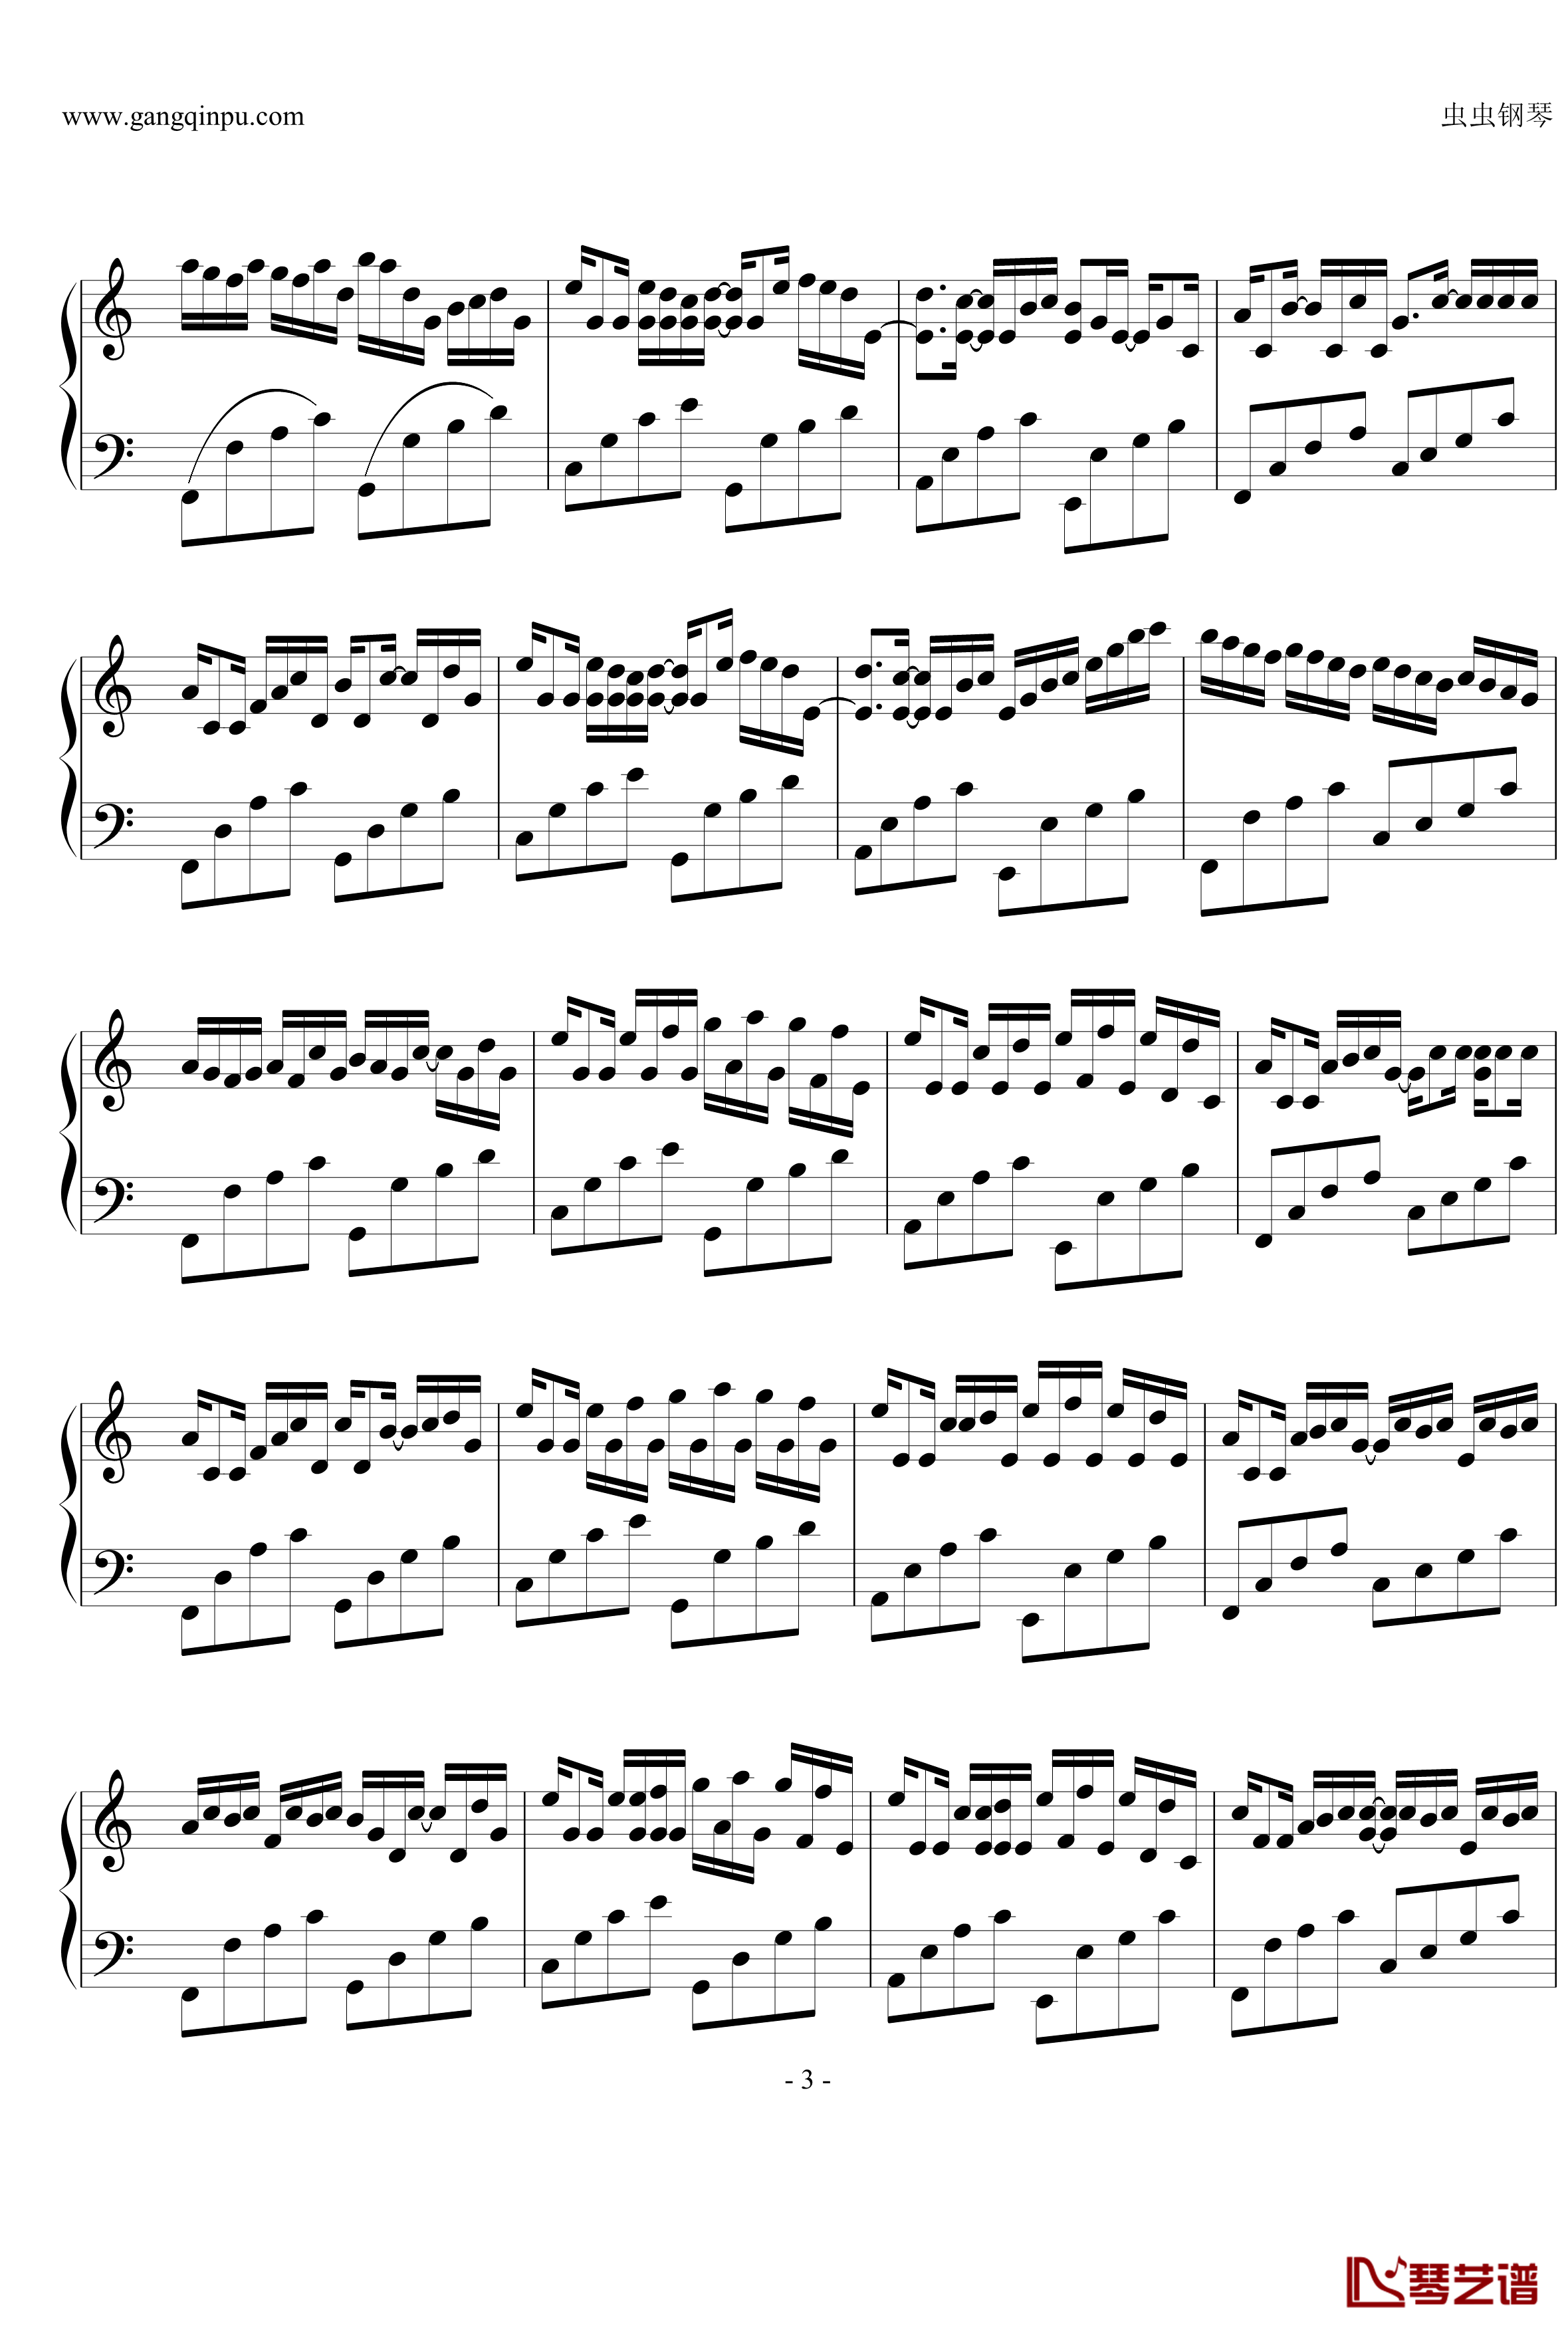 卡农钢琴谱-简化版-George Winston3